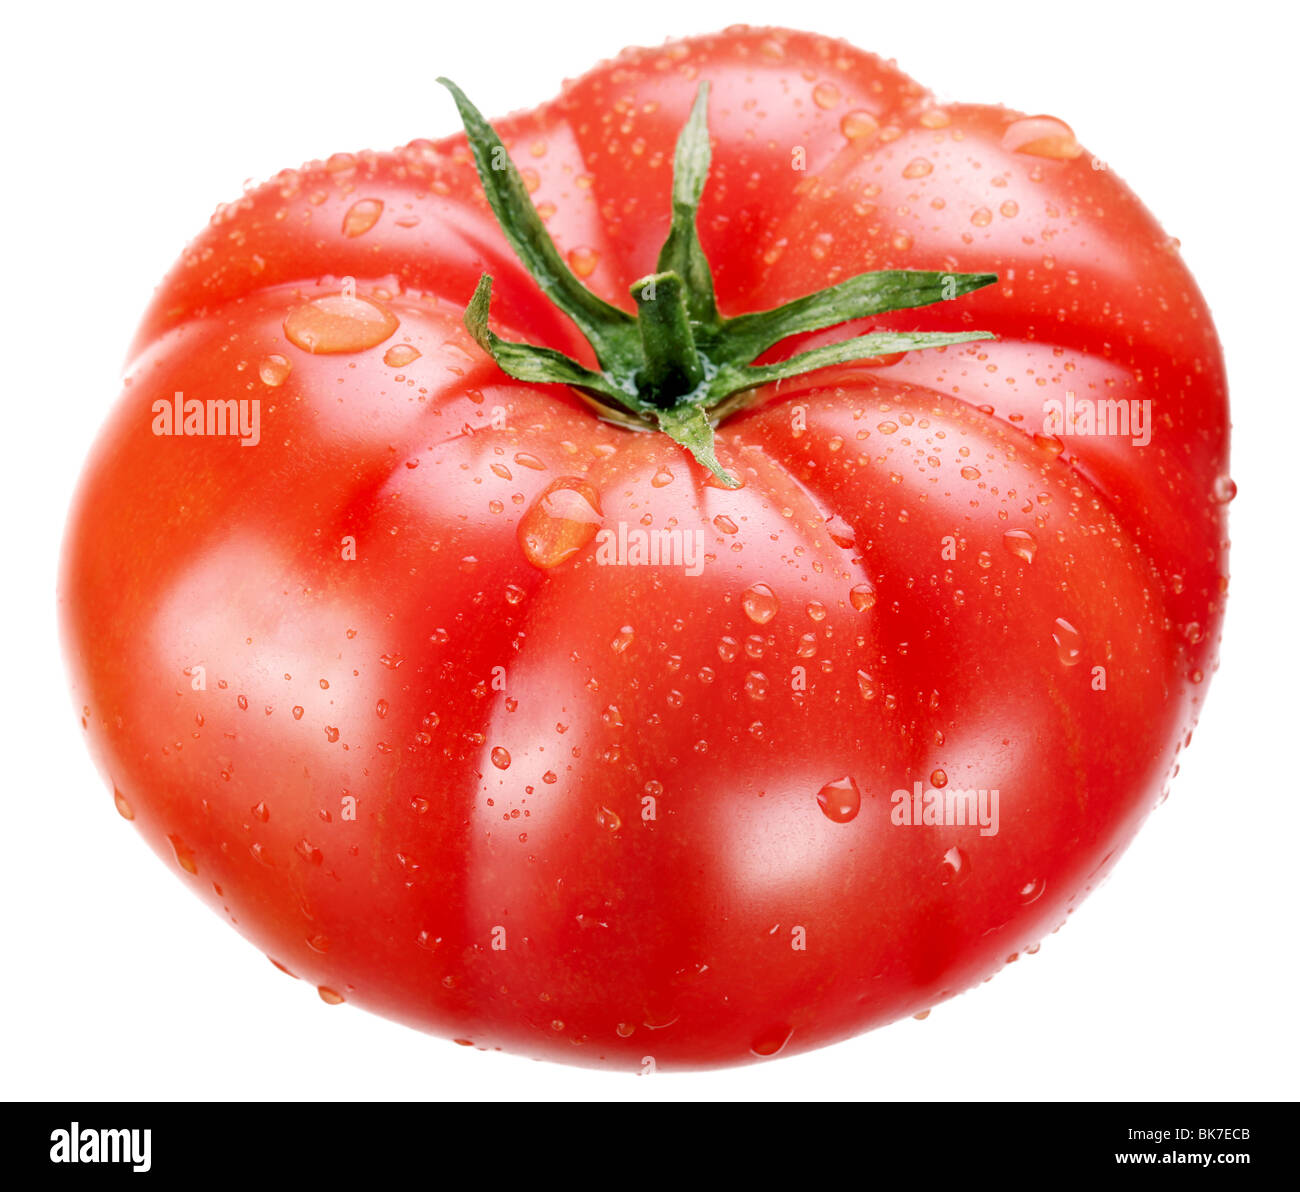 ripe tomato on a white background Stock Photo